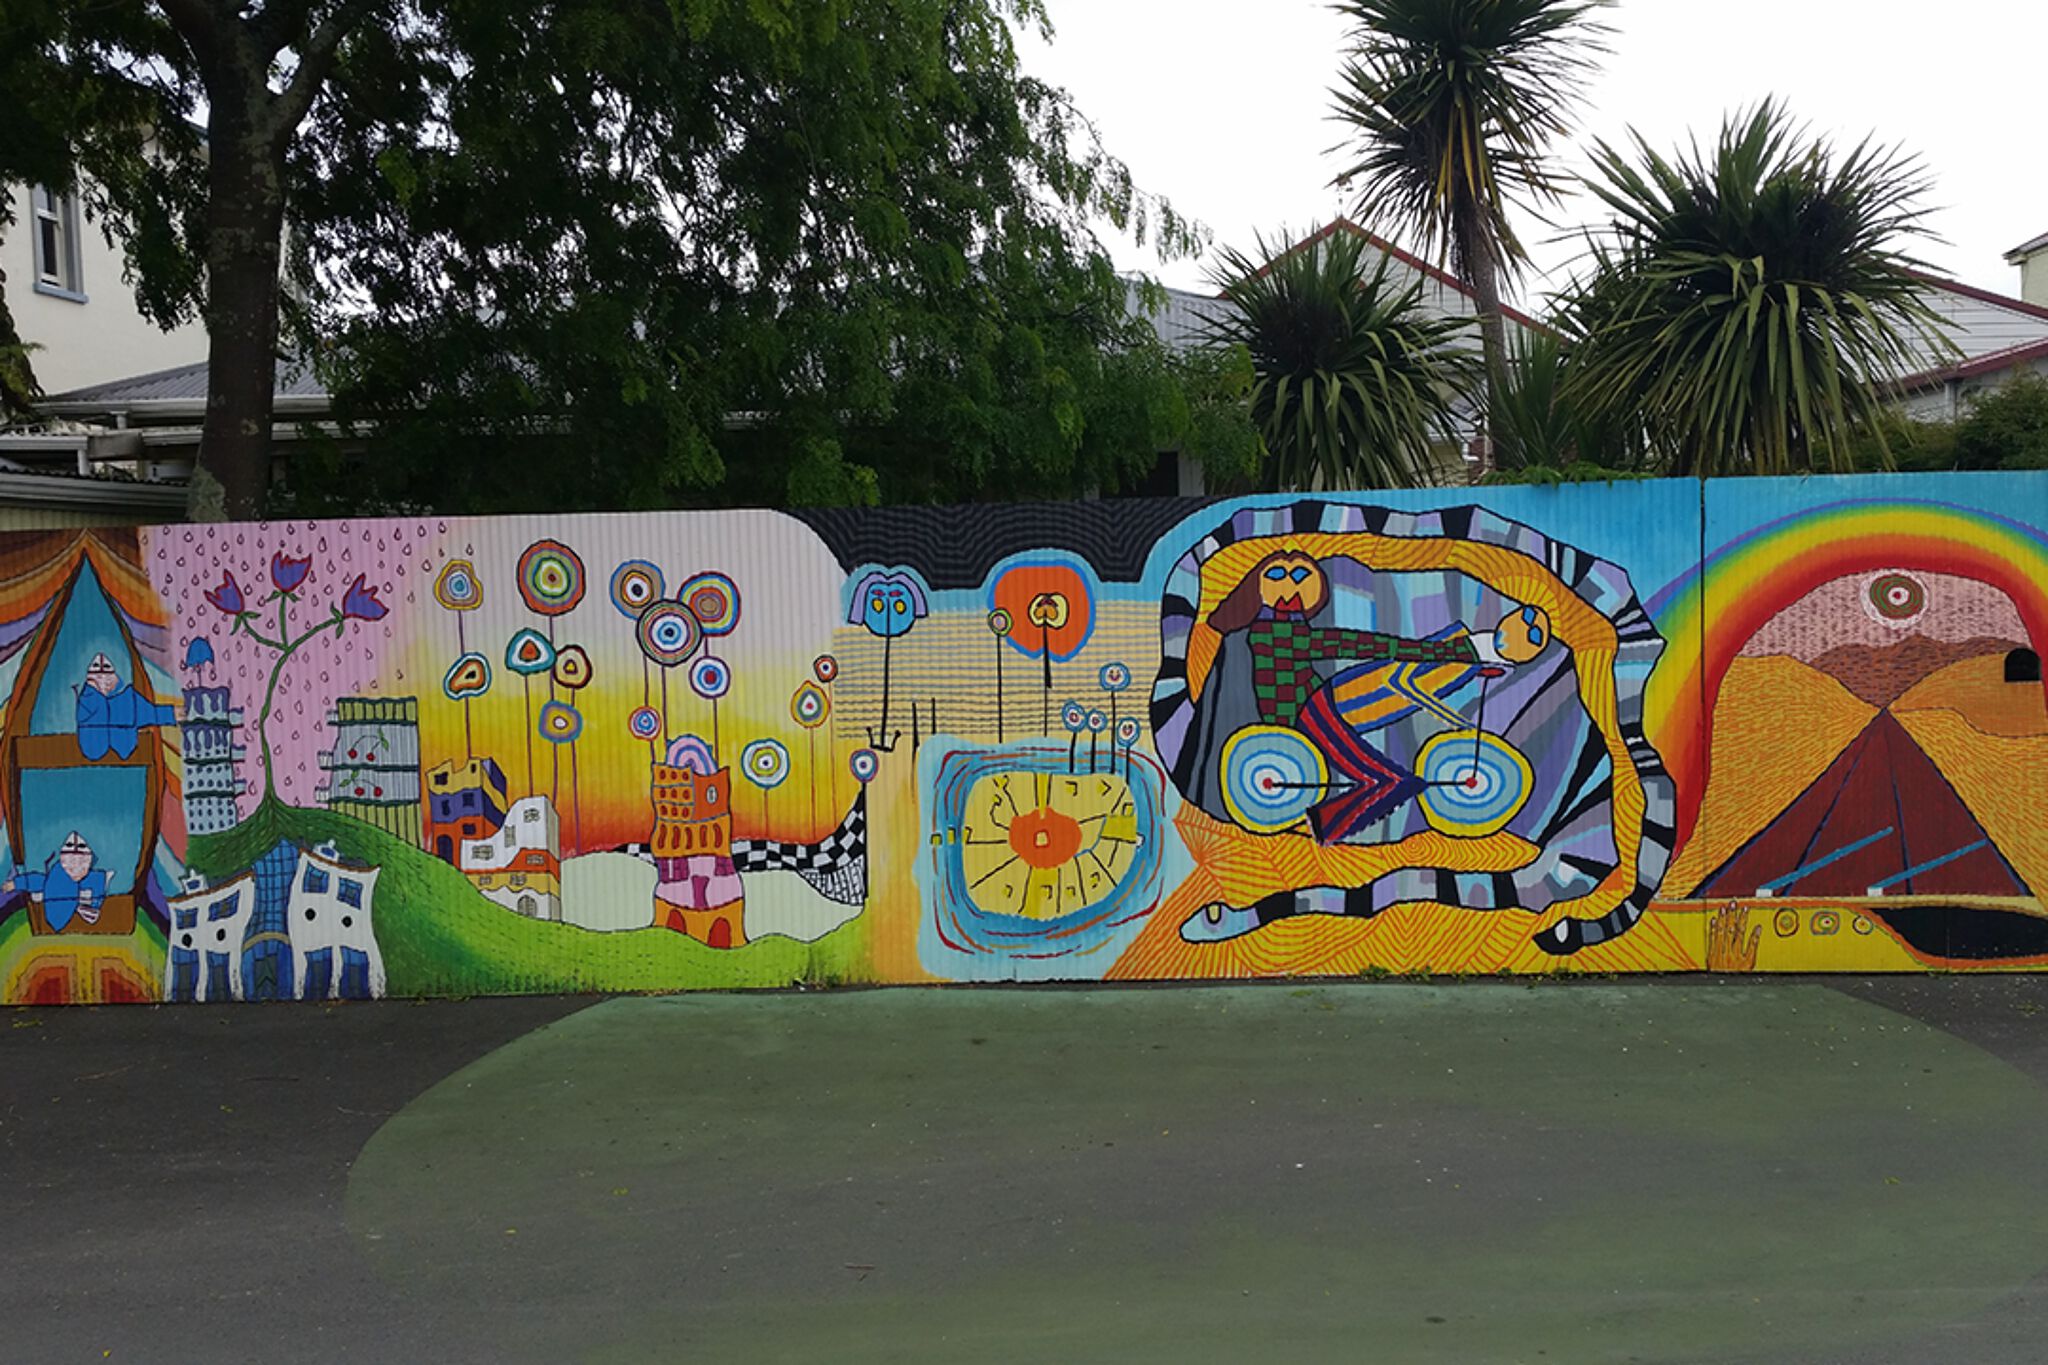 &mdash;Hundertwasser Mural